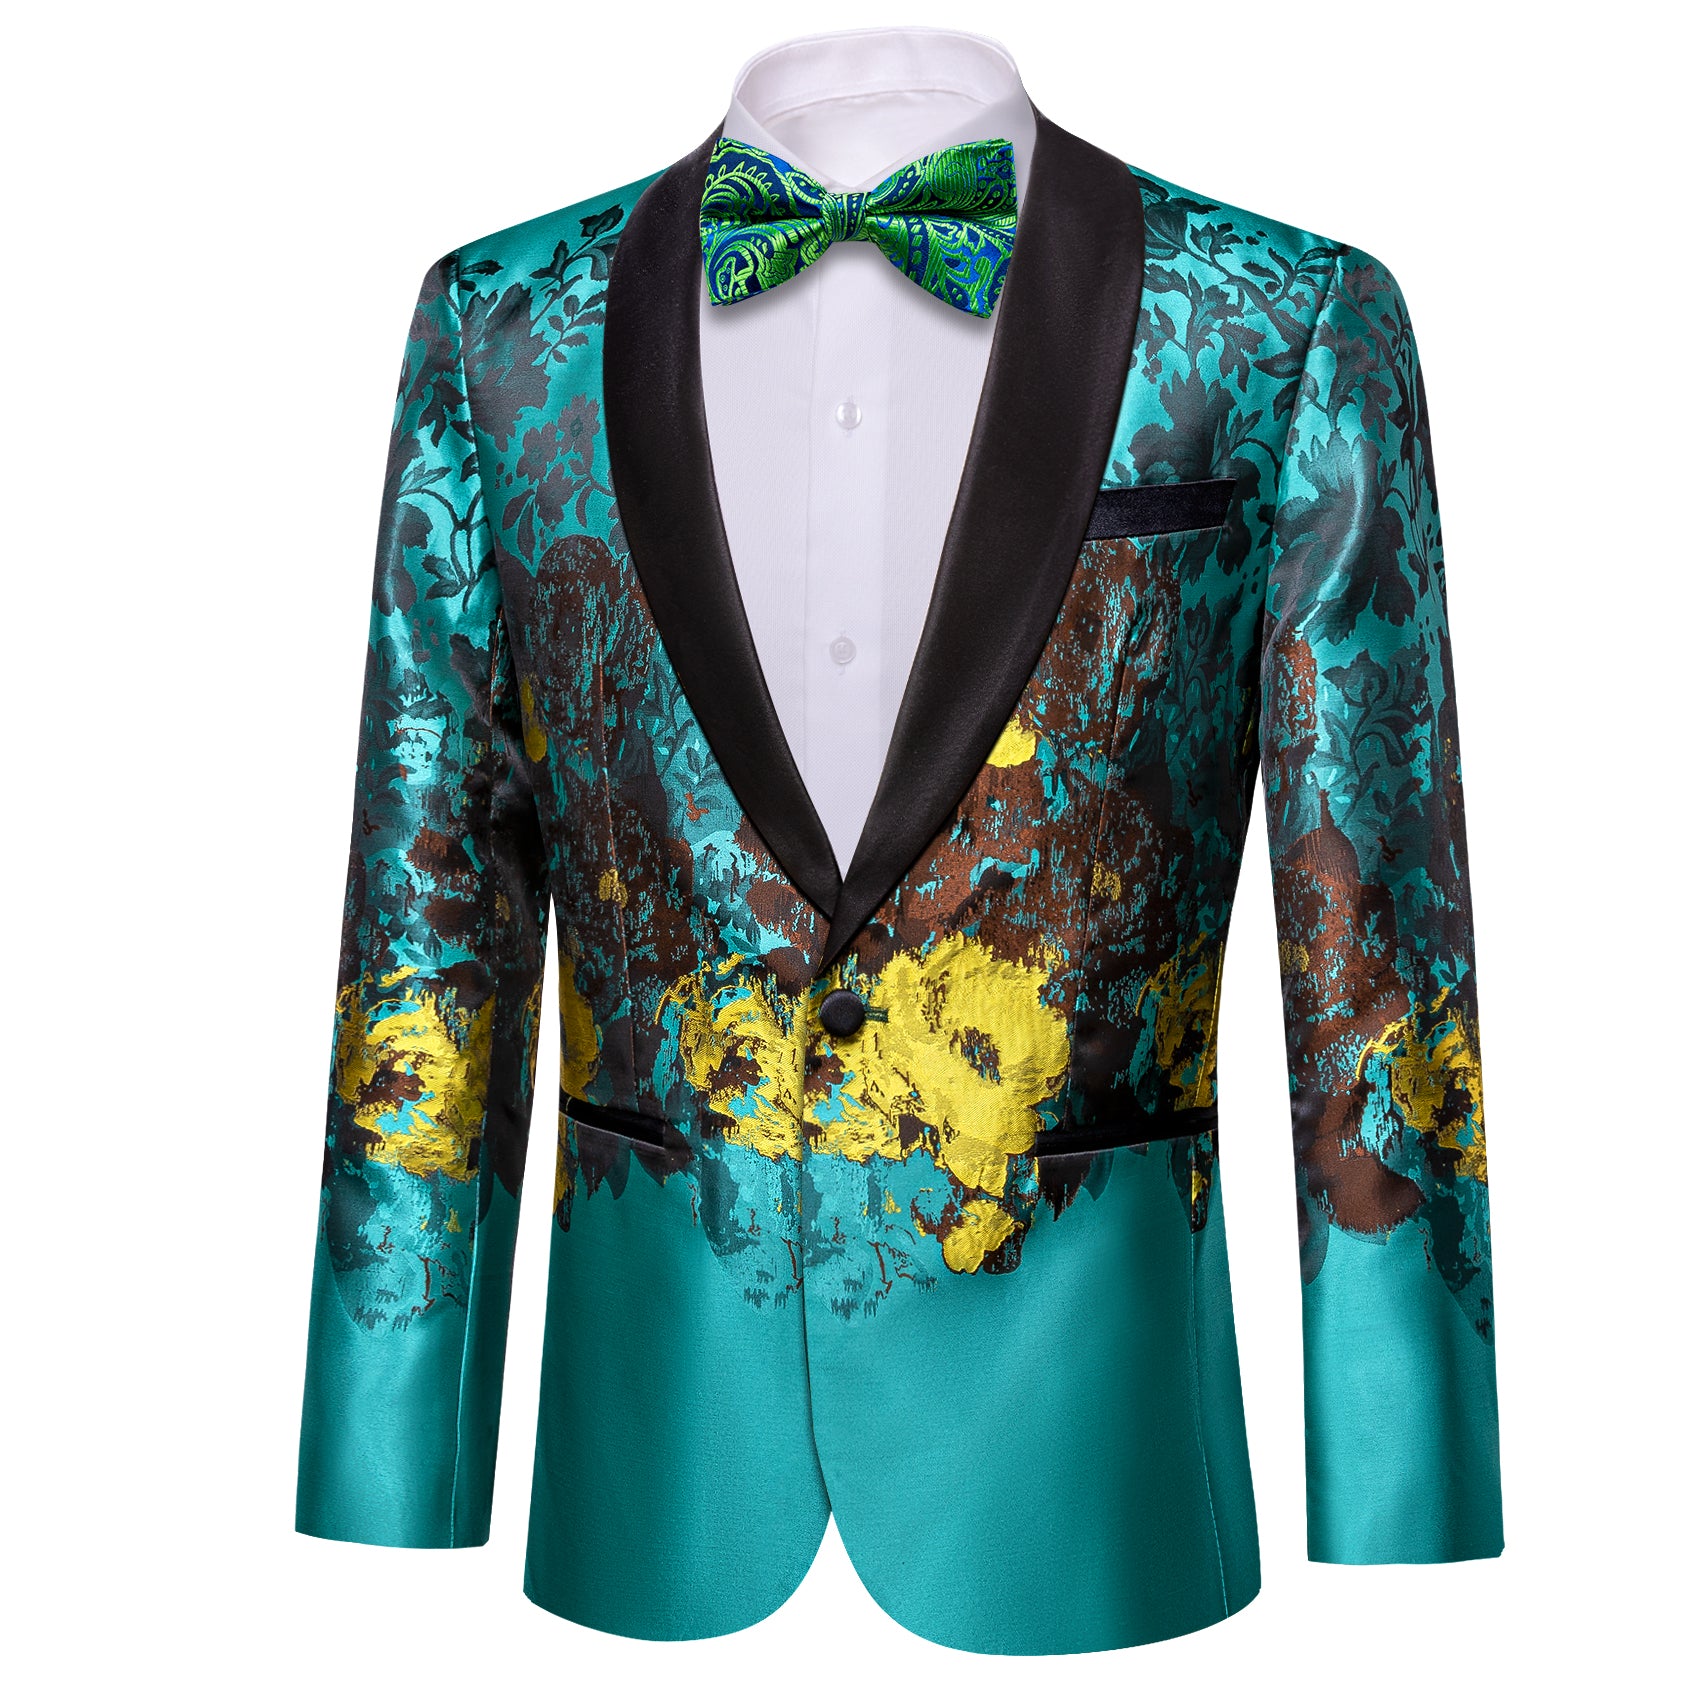 Barry.wang Men's Suit Blue Brown Floral Suit Jacket for Dress Party